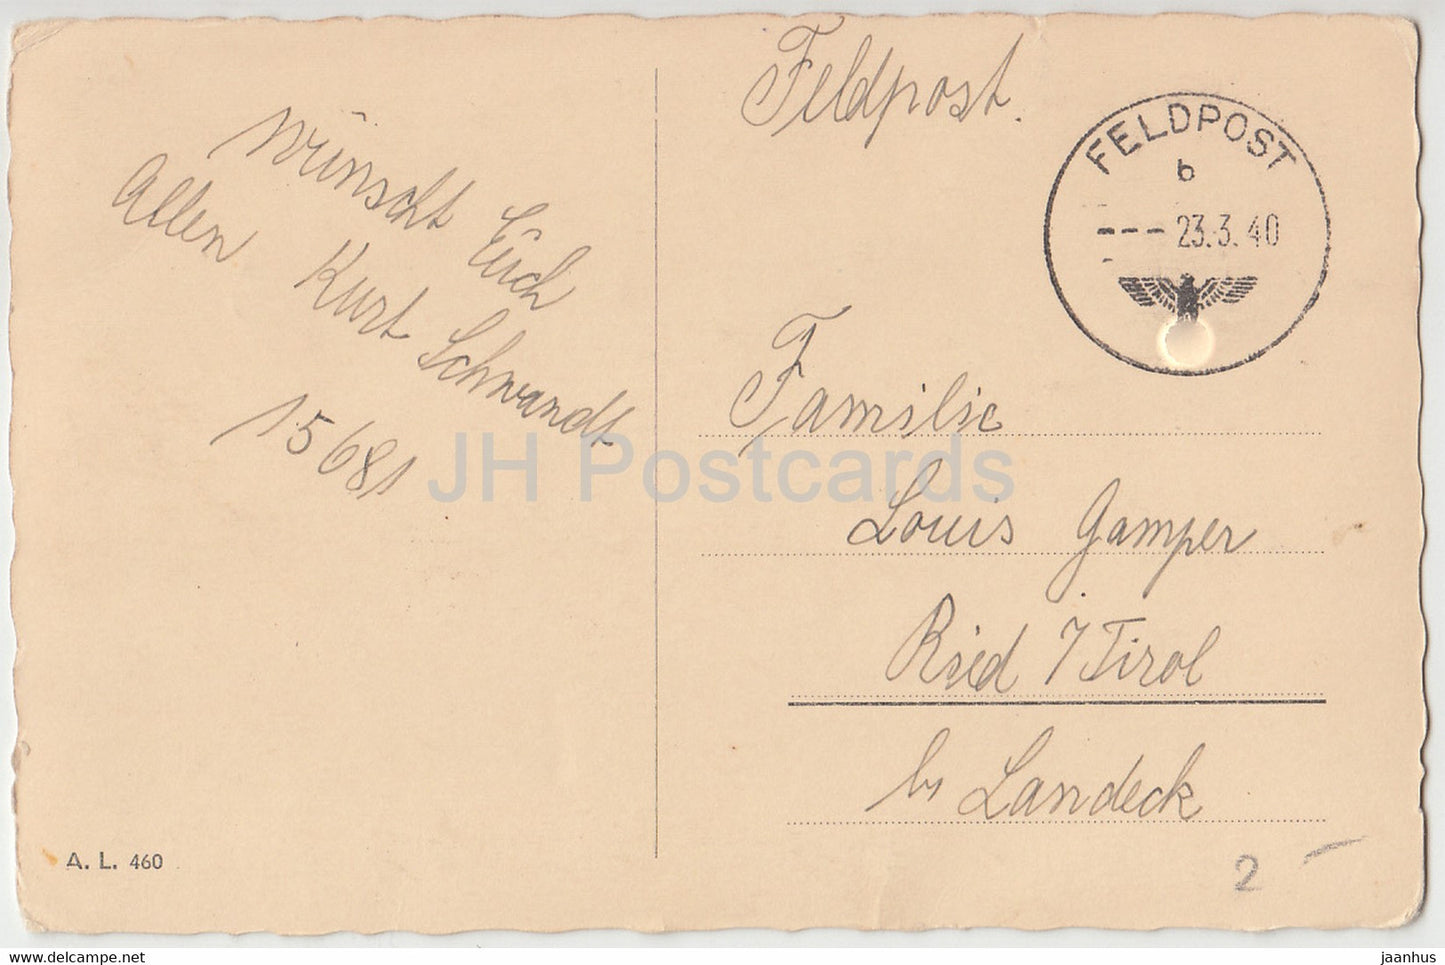 Carte de vœux de Pâques - Frohe Ostern - œuf - caneton - cloche - AL 460 - Feldpost - carte postale ancienne - 1940 - Allemagne - utilisé